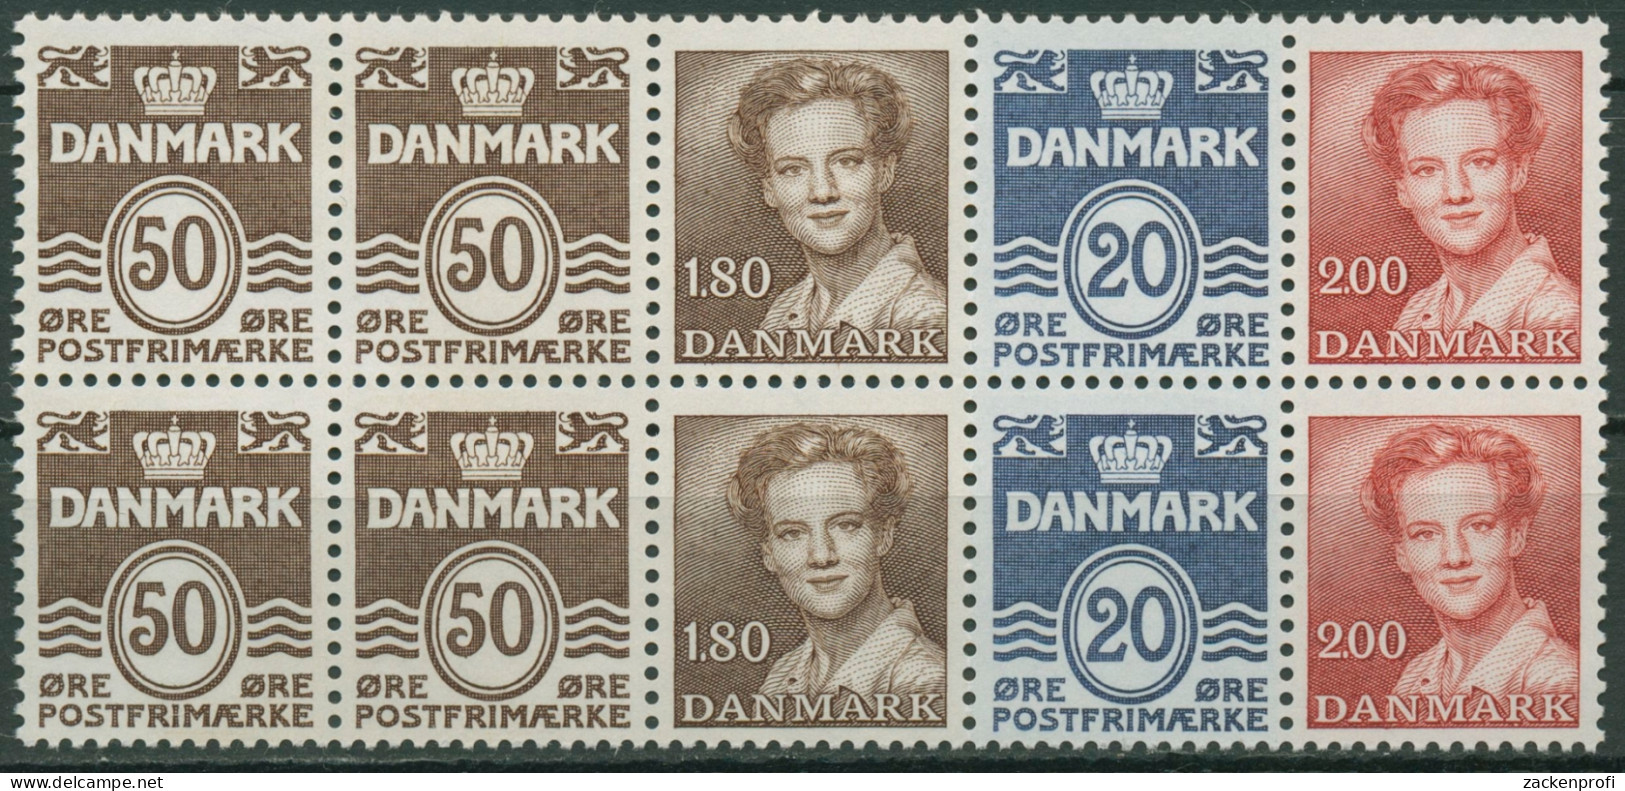 Dänemark 1974 Markenheftchenblatt H-Bl. 19 Postfrisch (C96552) - Markenheftchen